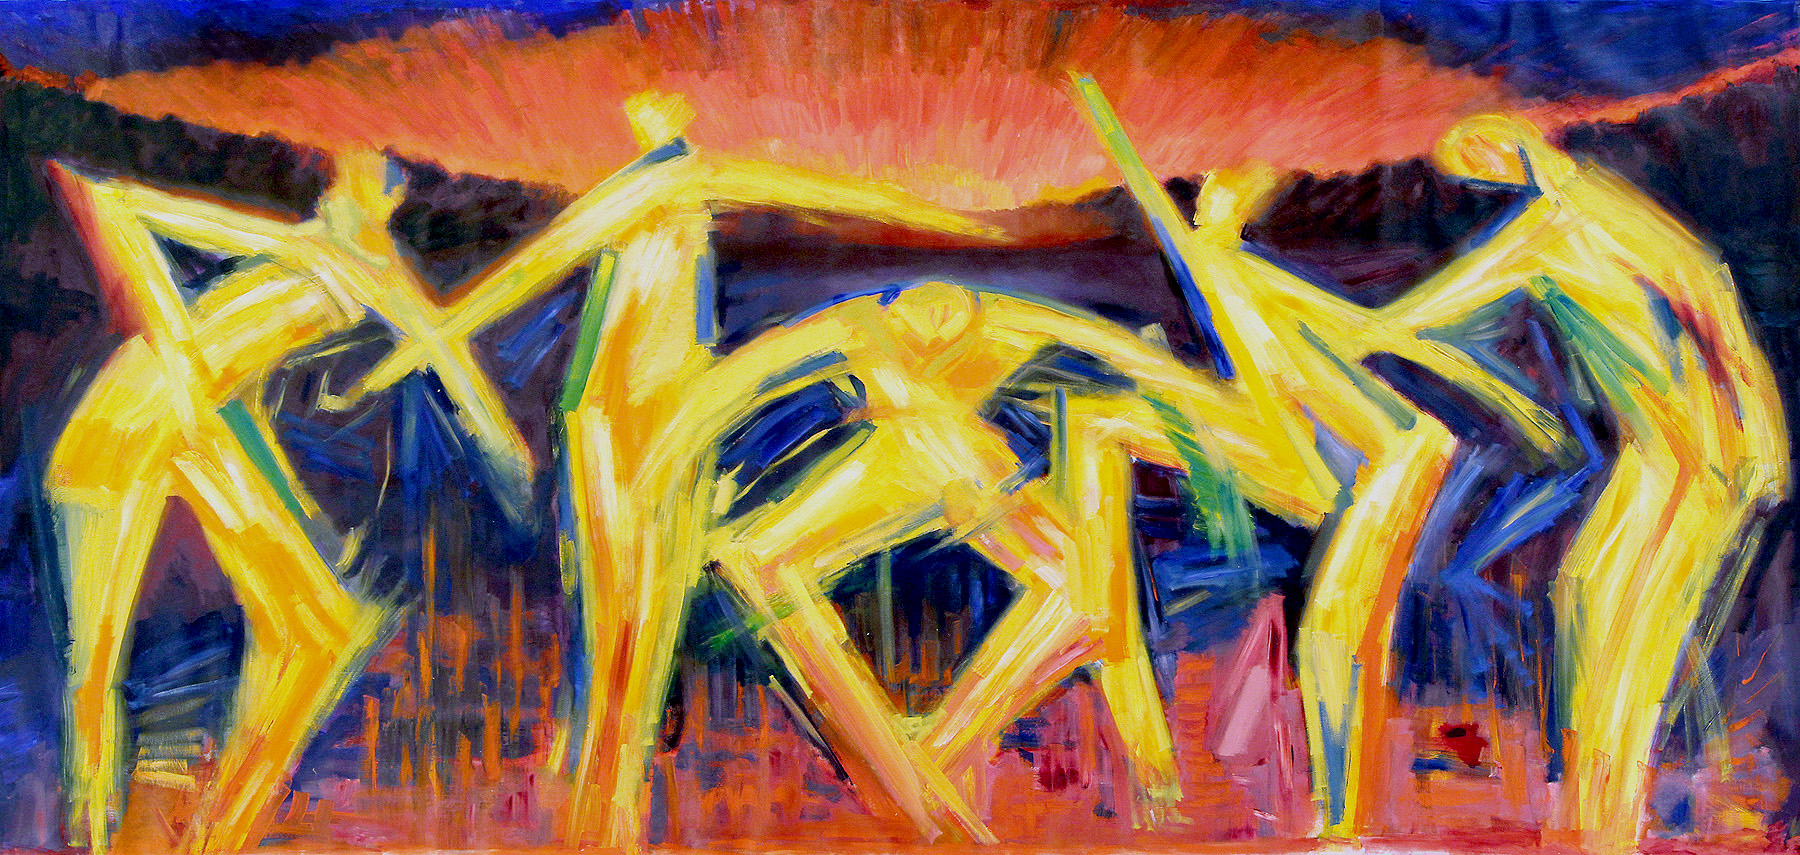 M. Cieśla: "Archetyp, Tanz für die aufgehende Sonne", Original/Unikat, expressionistisches Ölgemälde